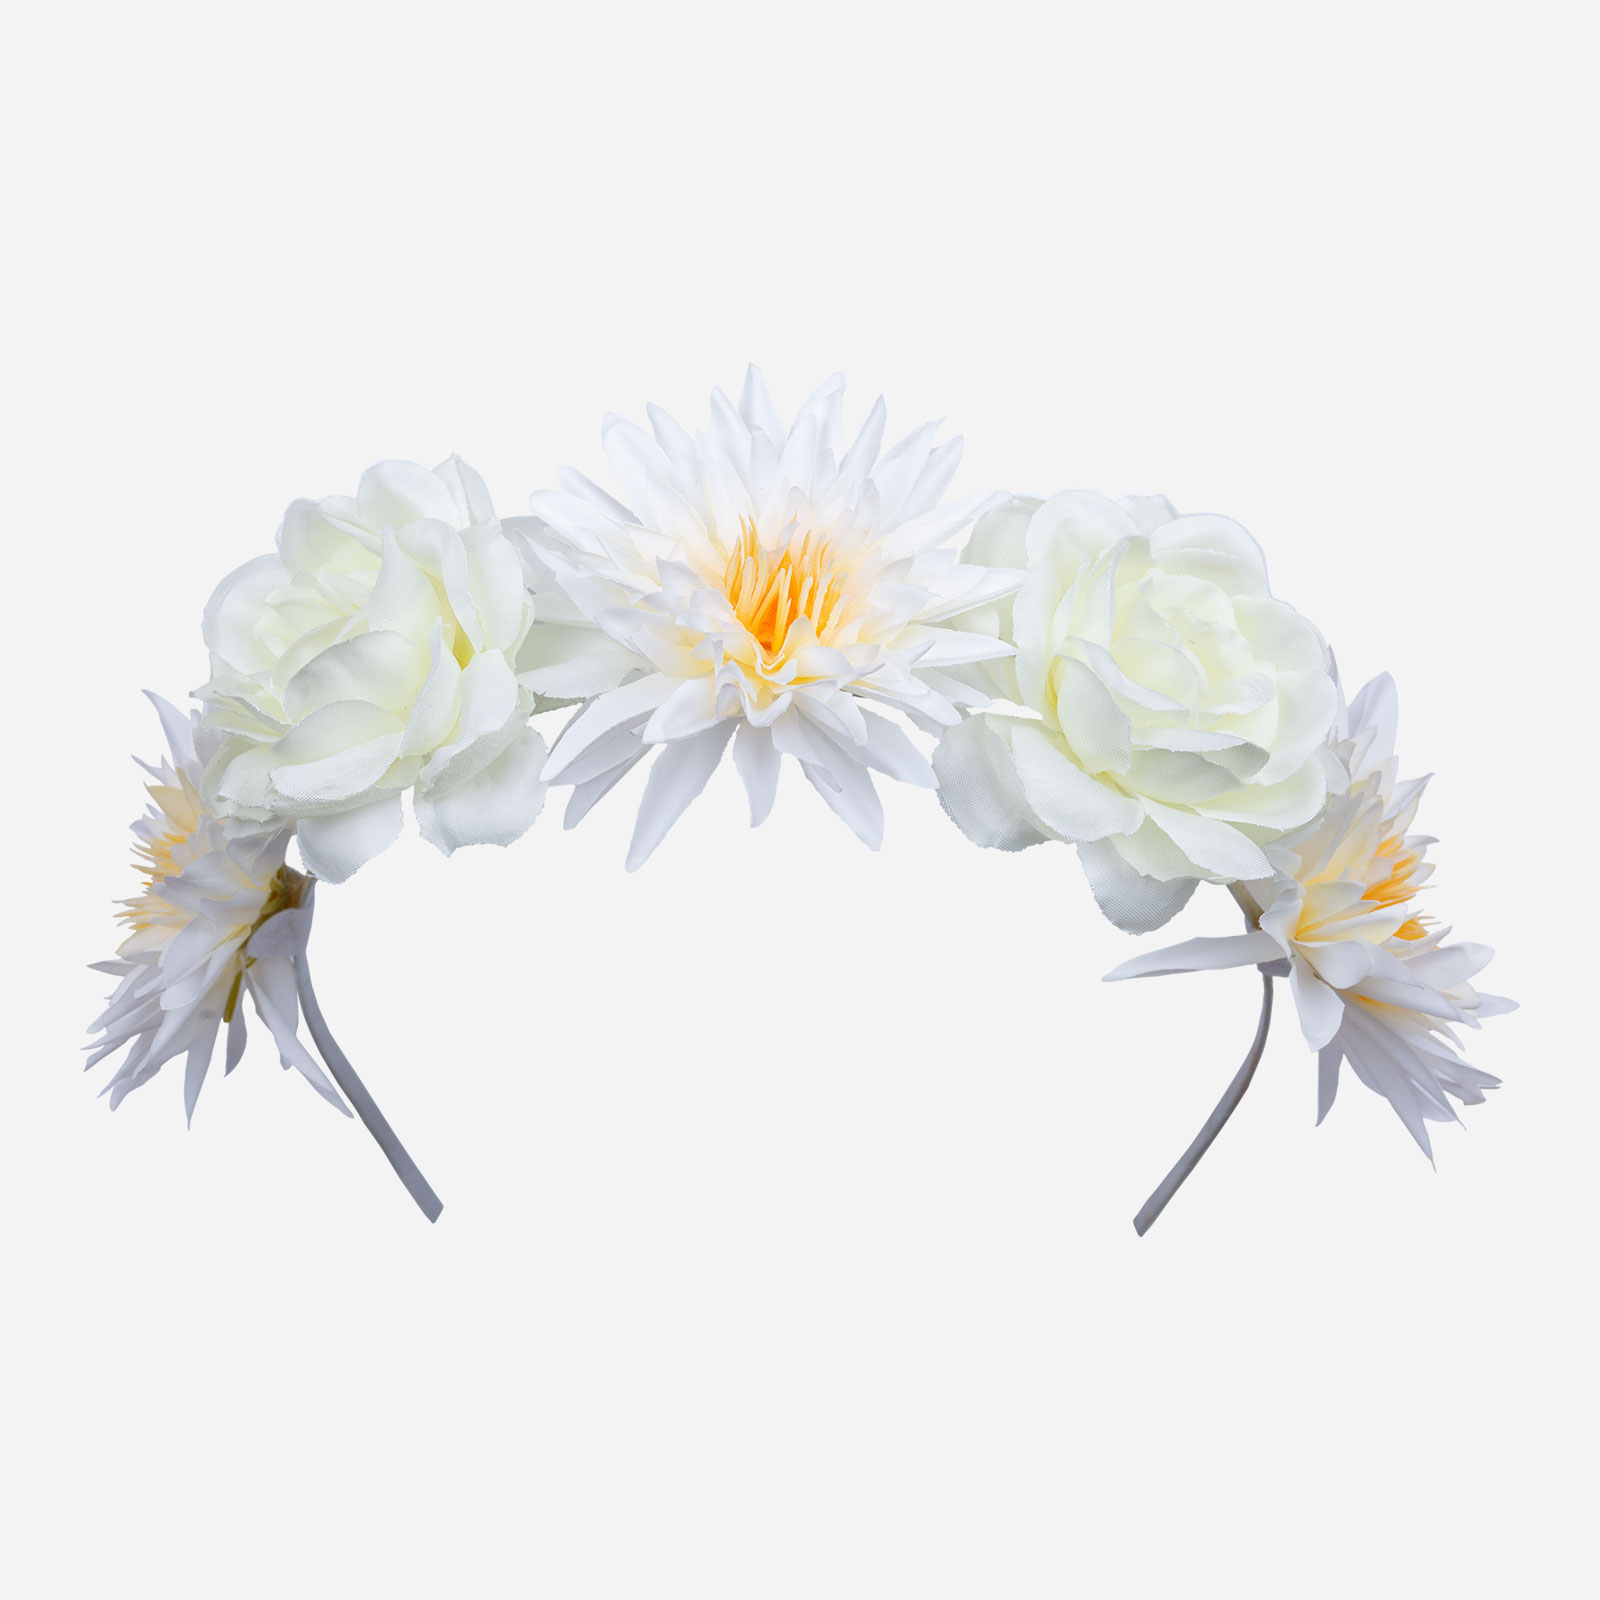 Hårkrans med vita blommor